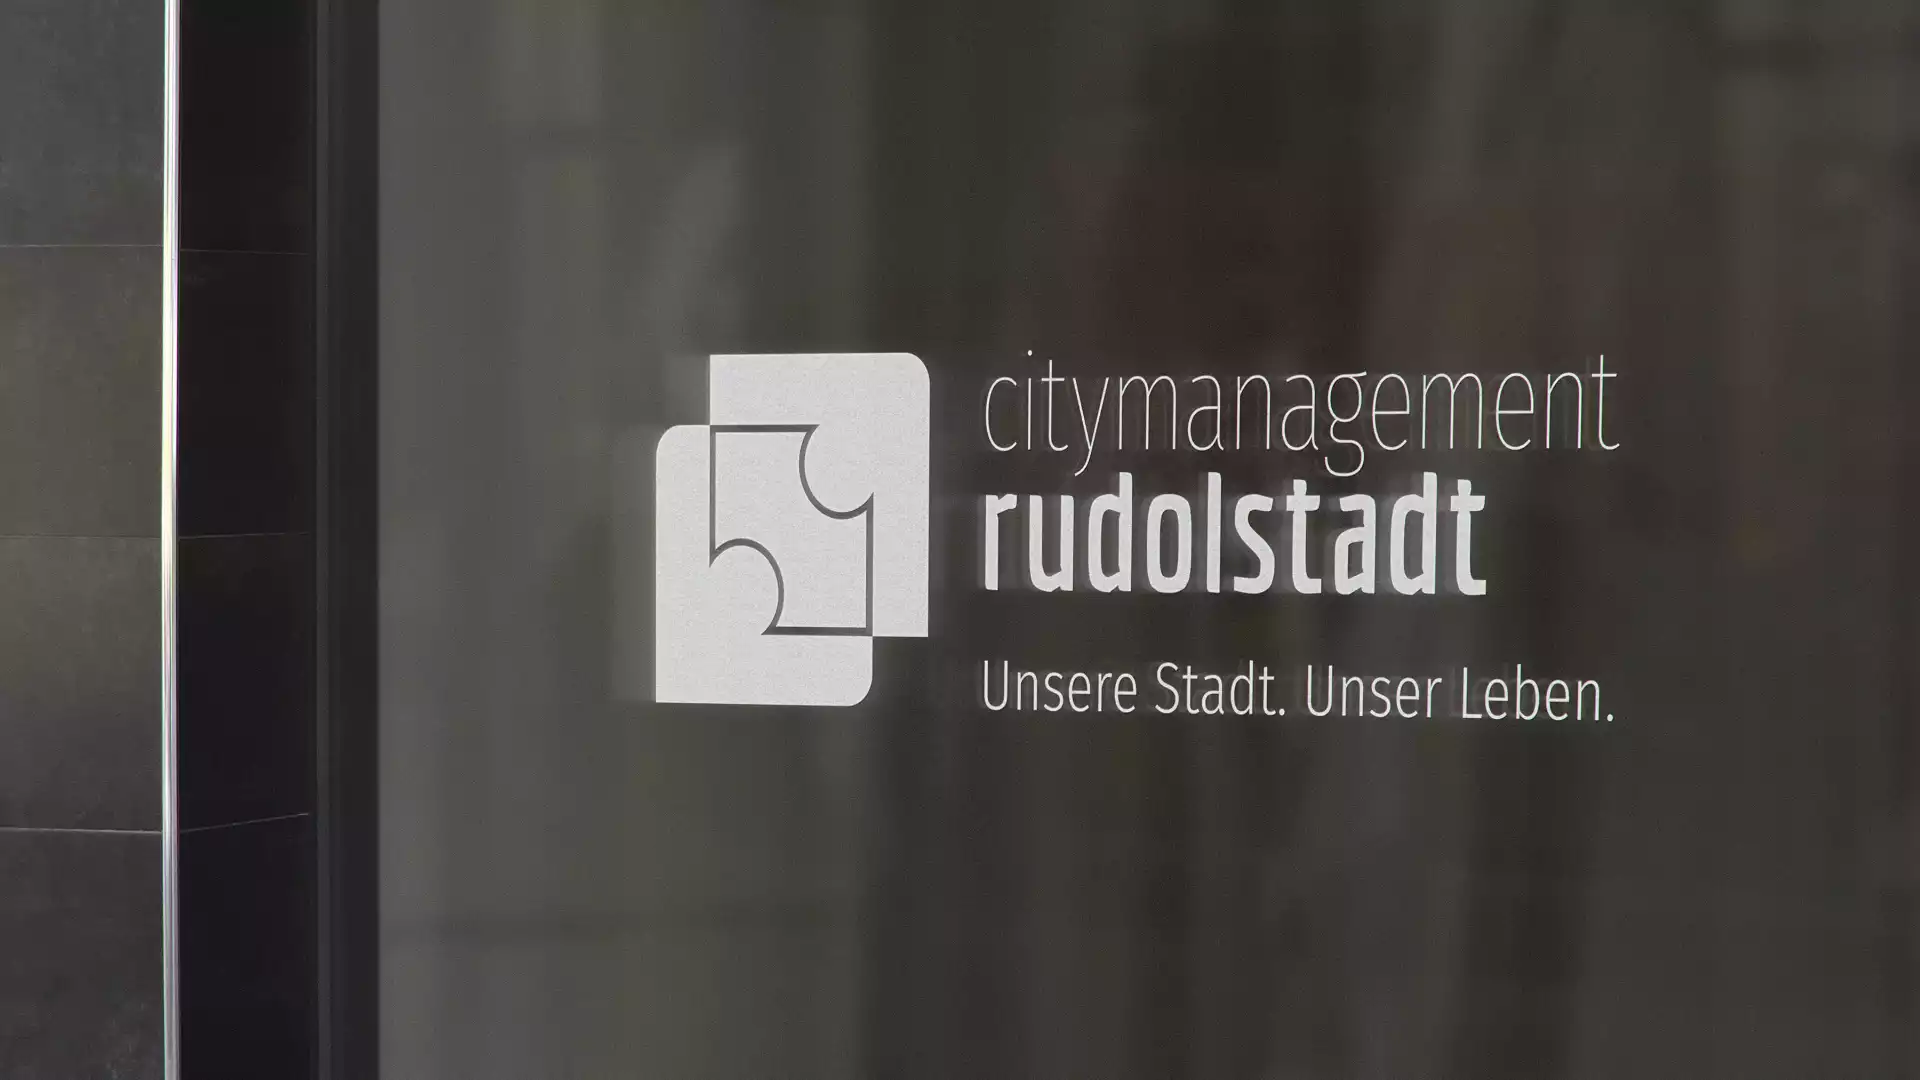 Citymanagement Rudolstadt Logo